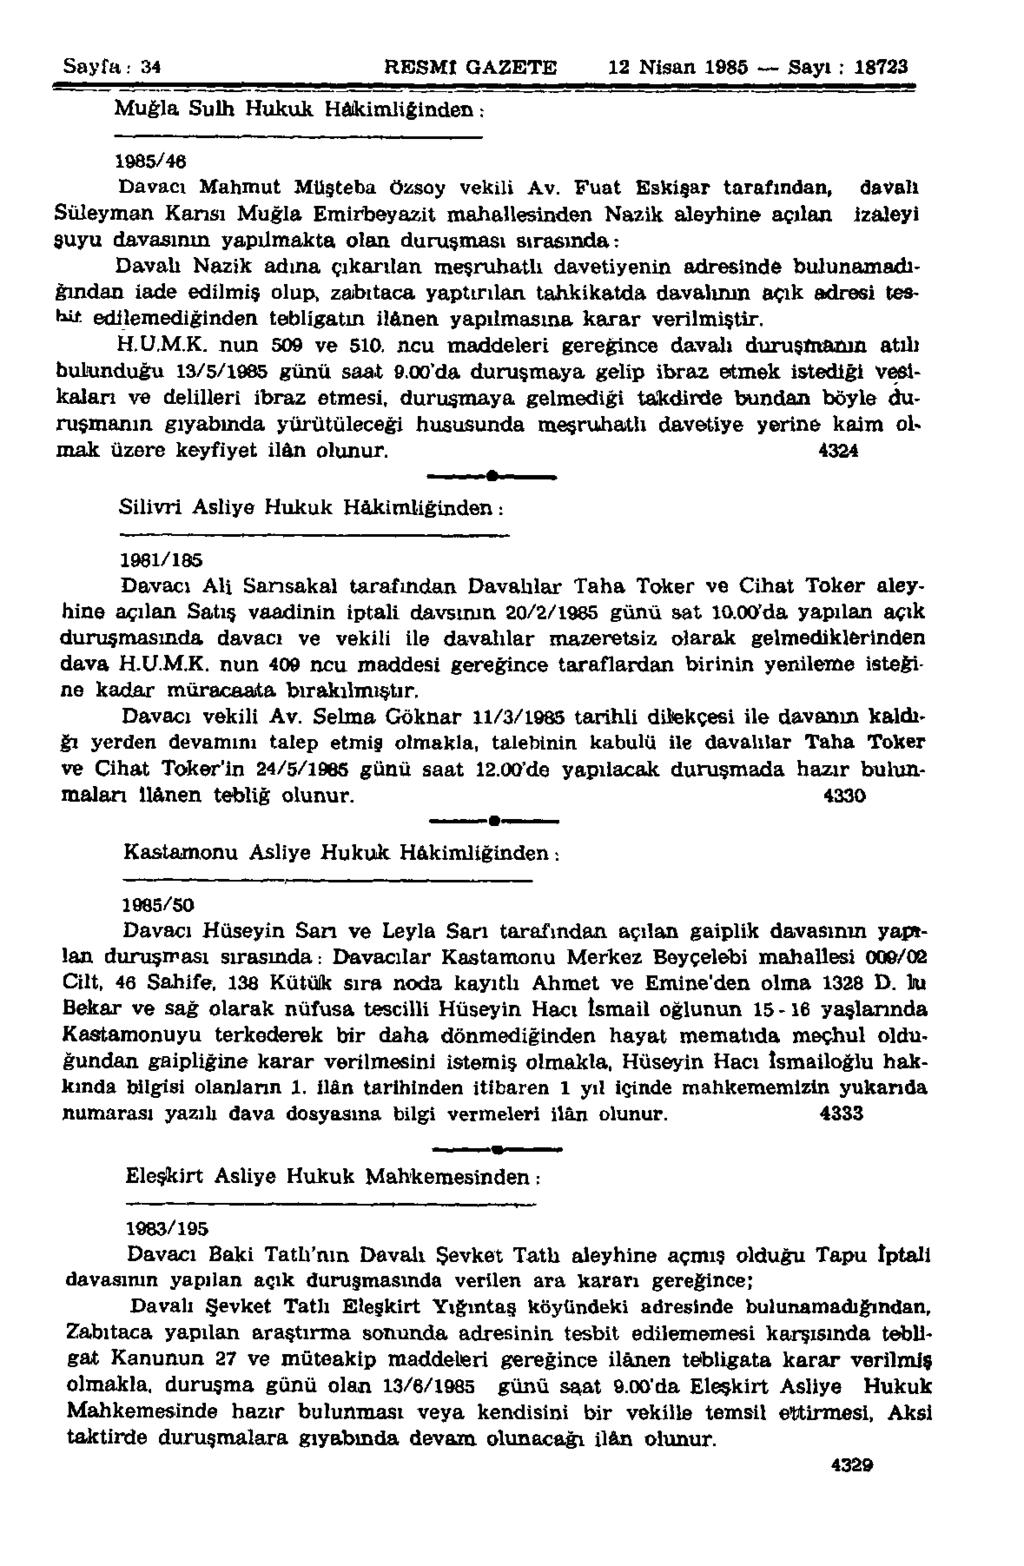 Sayfa: 34 RESMİ GAZETE 12 Nisan 1985 Sayı : 18723 Muğla Sulh Hukuk Hâkimliğinden: 1985/46 Davacı Mahmut Müşteba özsoy vekili Av.